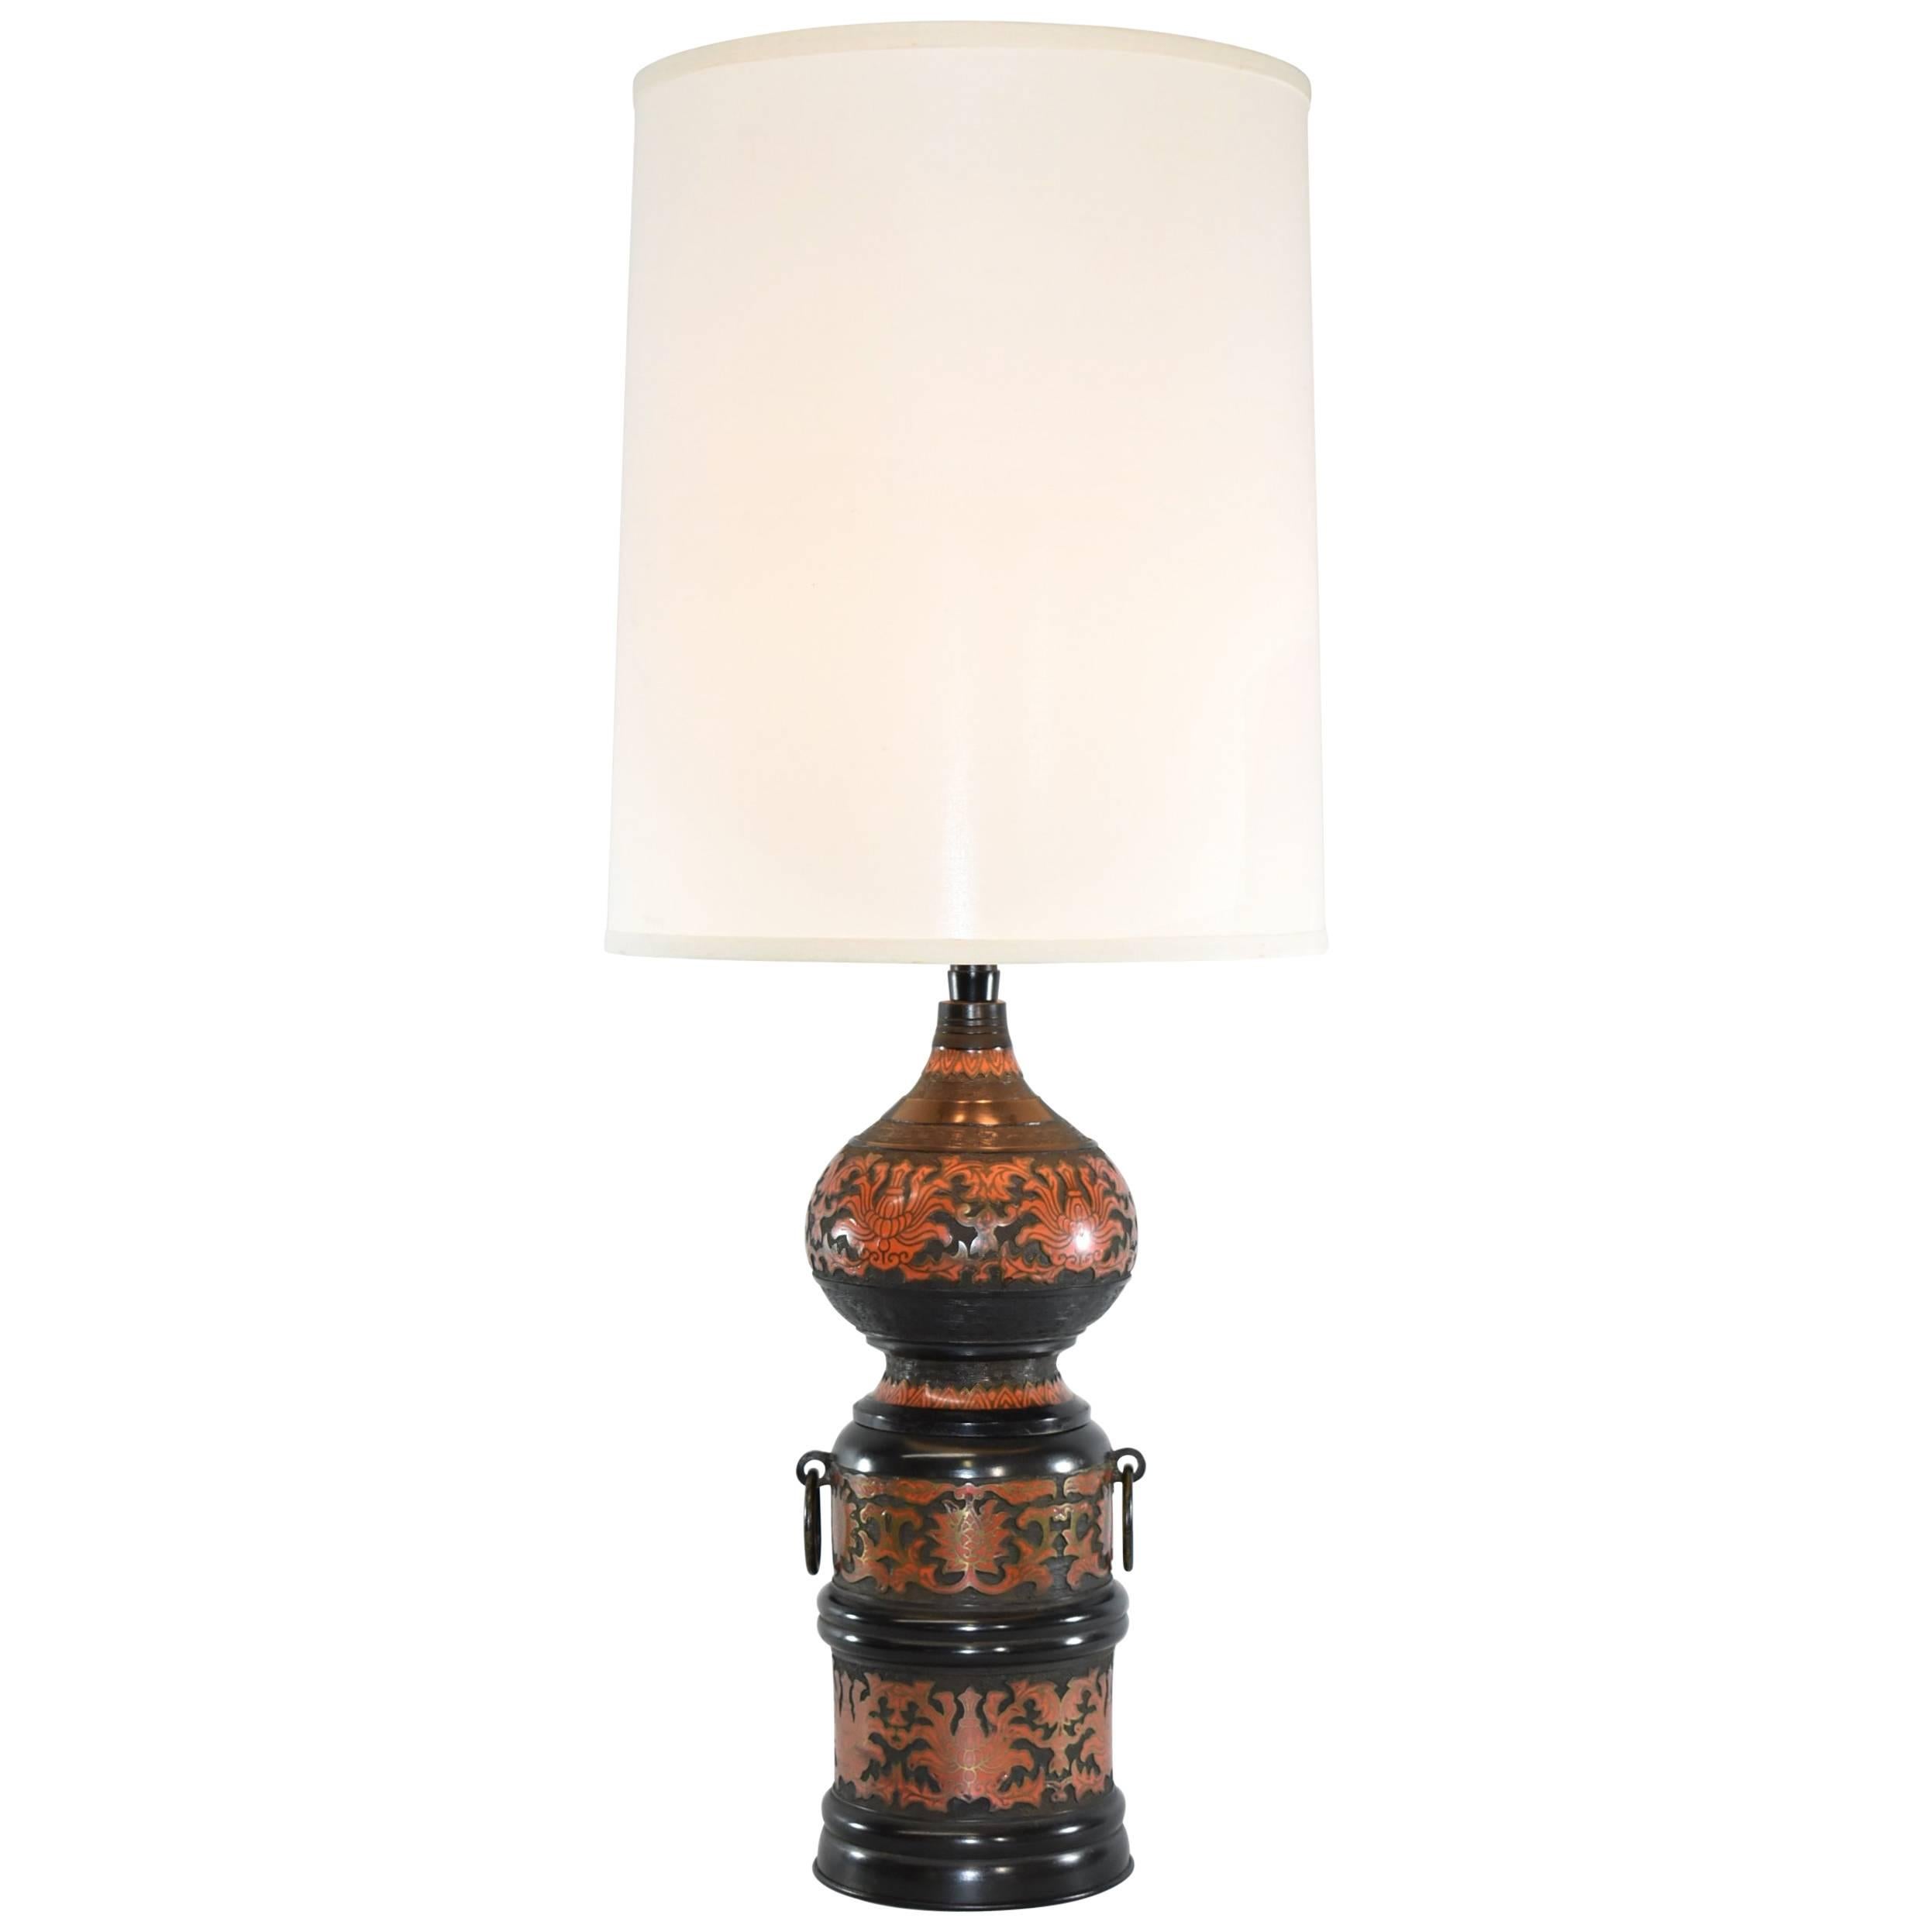 Champlevé Cloisonné Enamel Table Lamp by Marbro